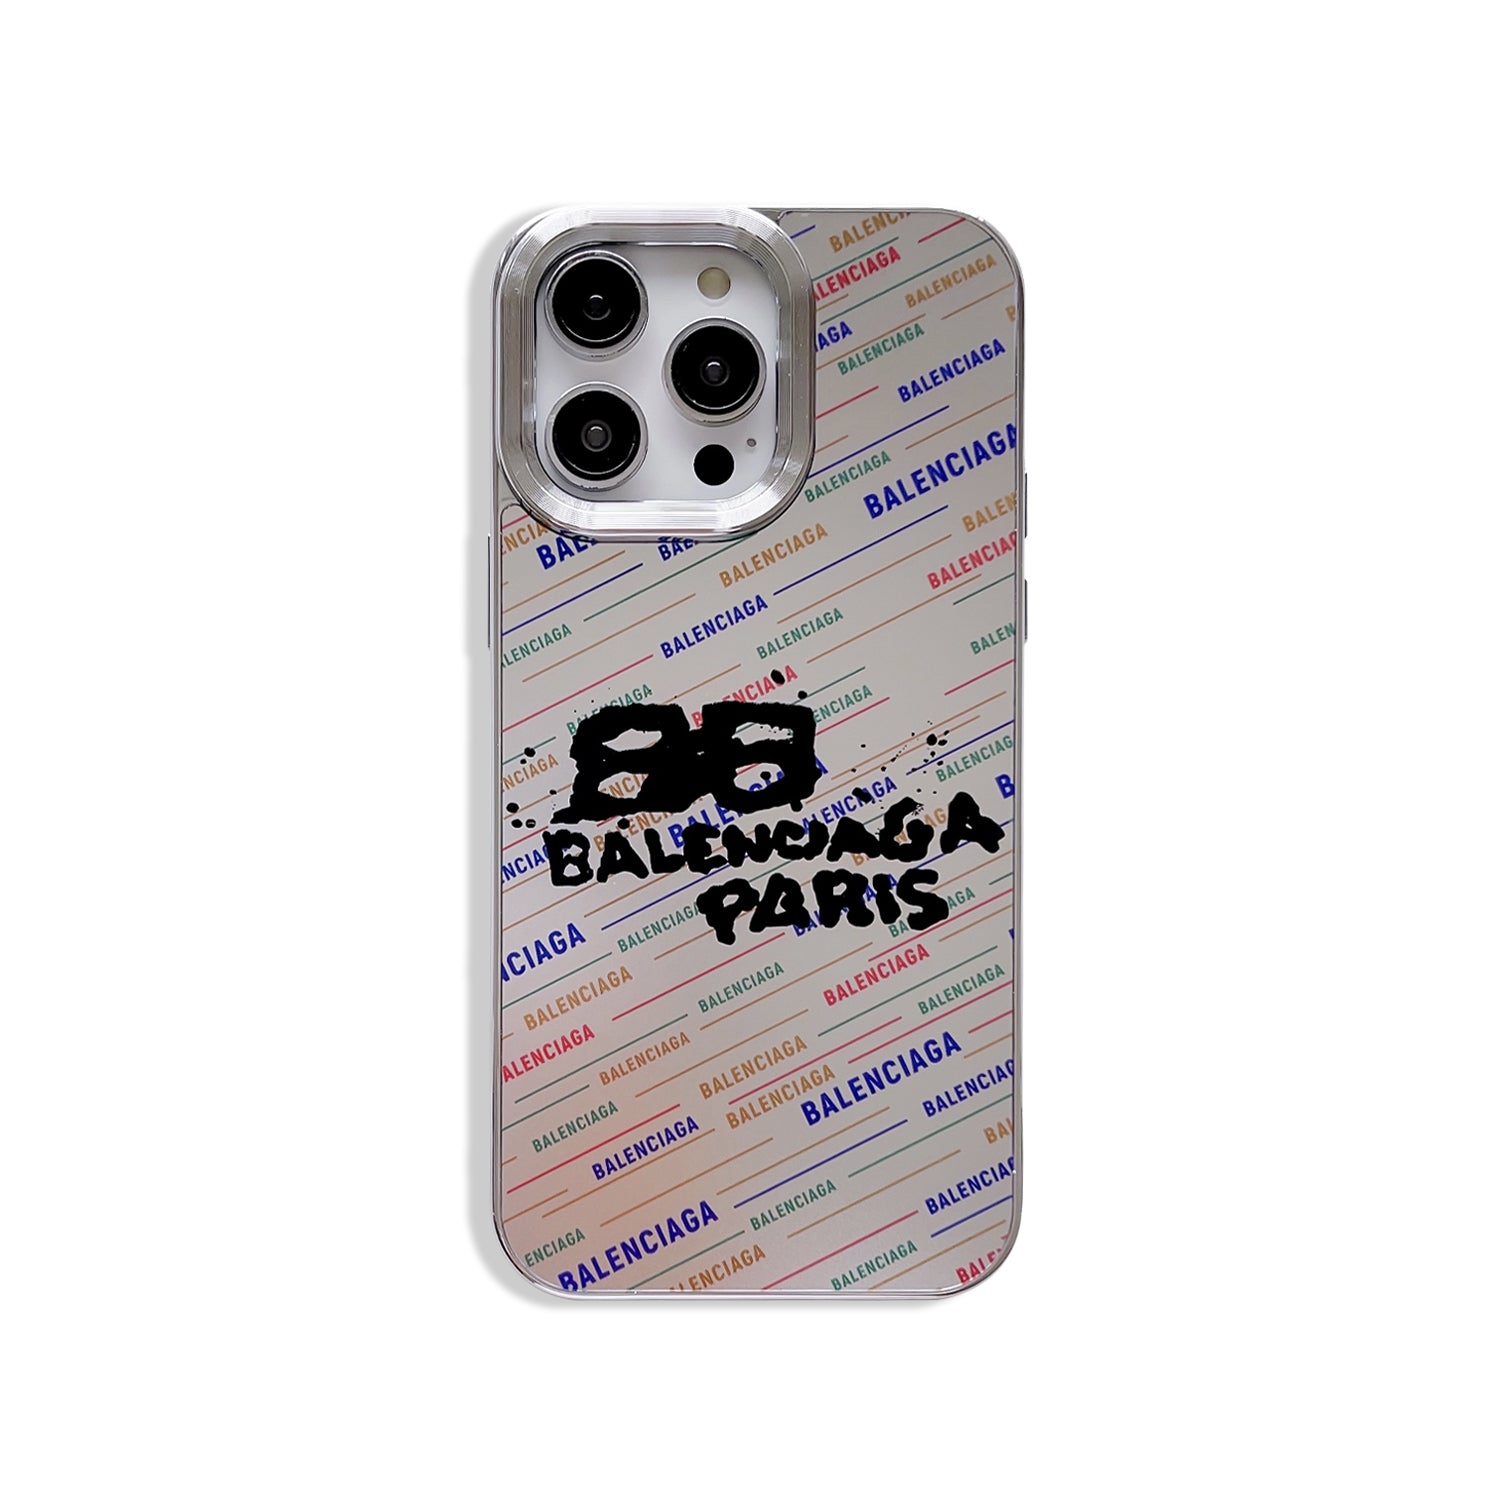 Paris iPhone case A3  A4